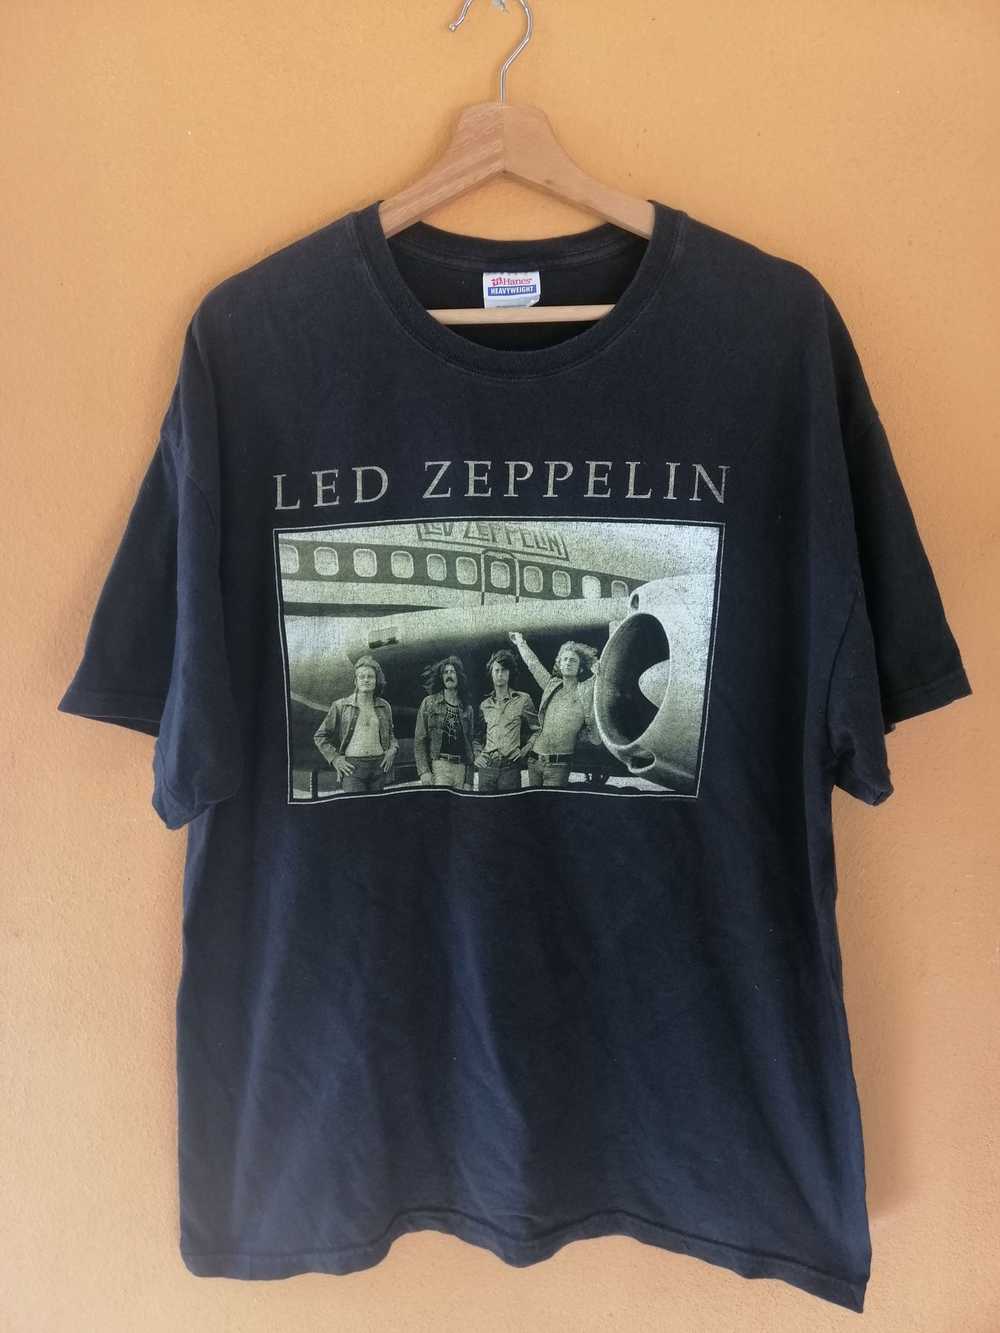 Band Tees × Led Zeppelin × Vintage Vintage 2005 L… - image 1